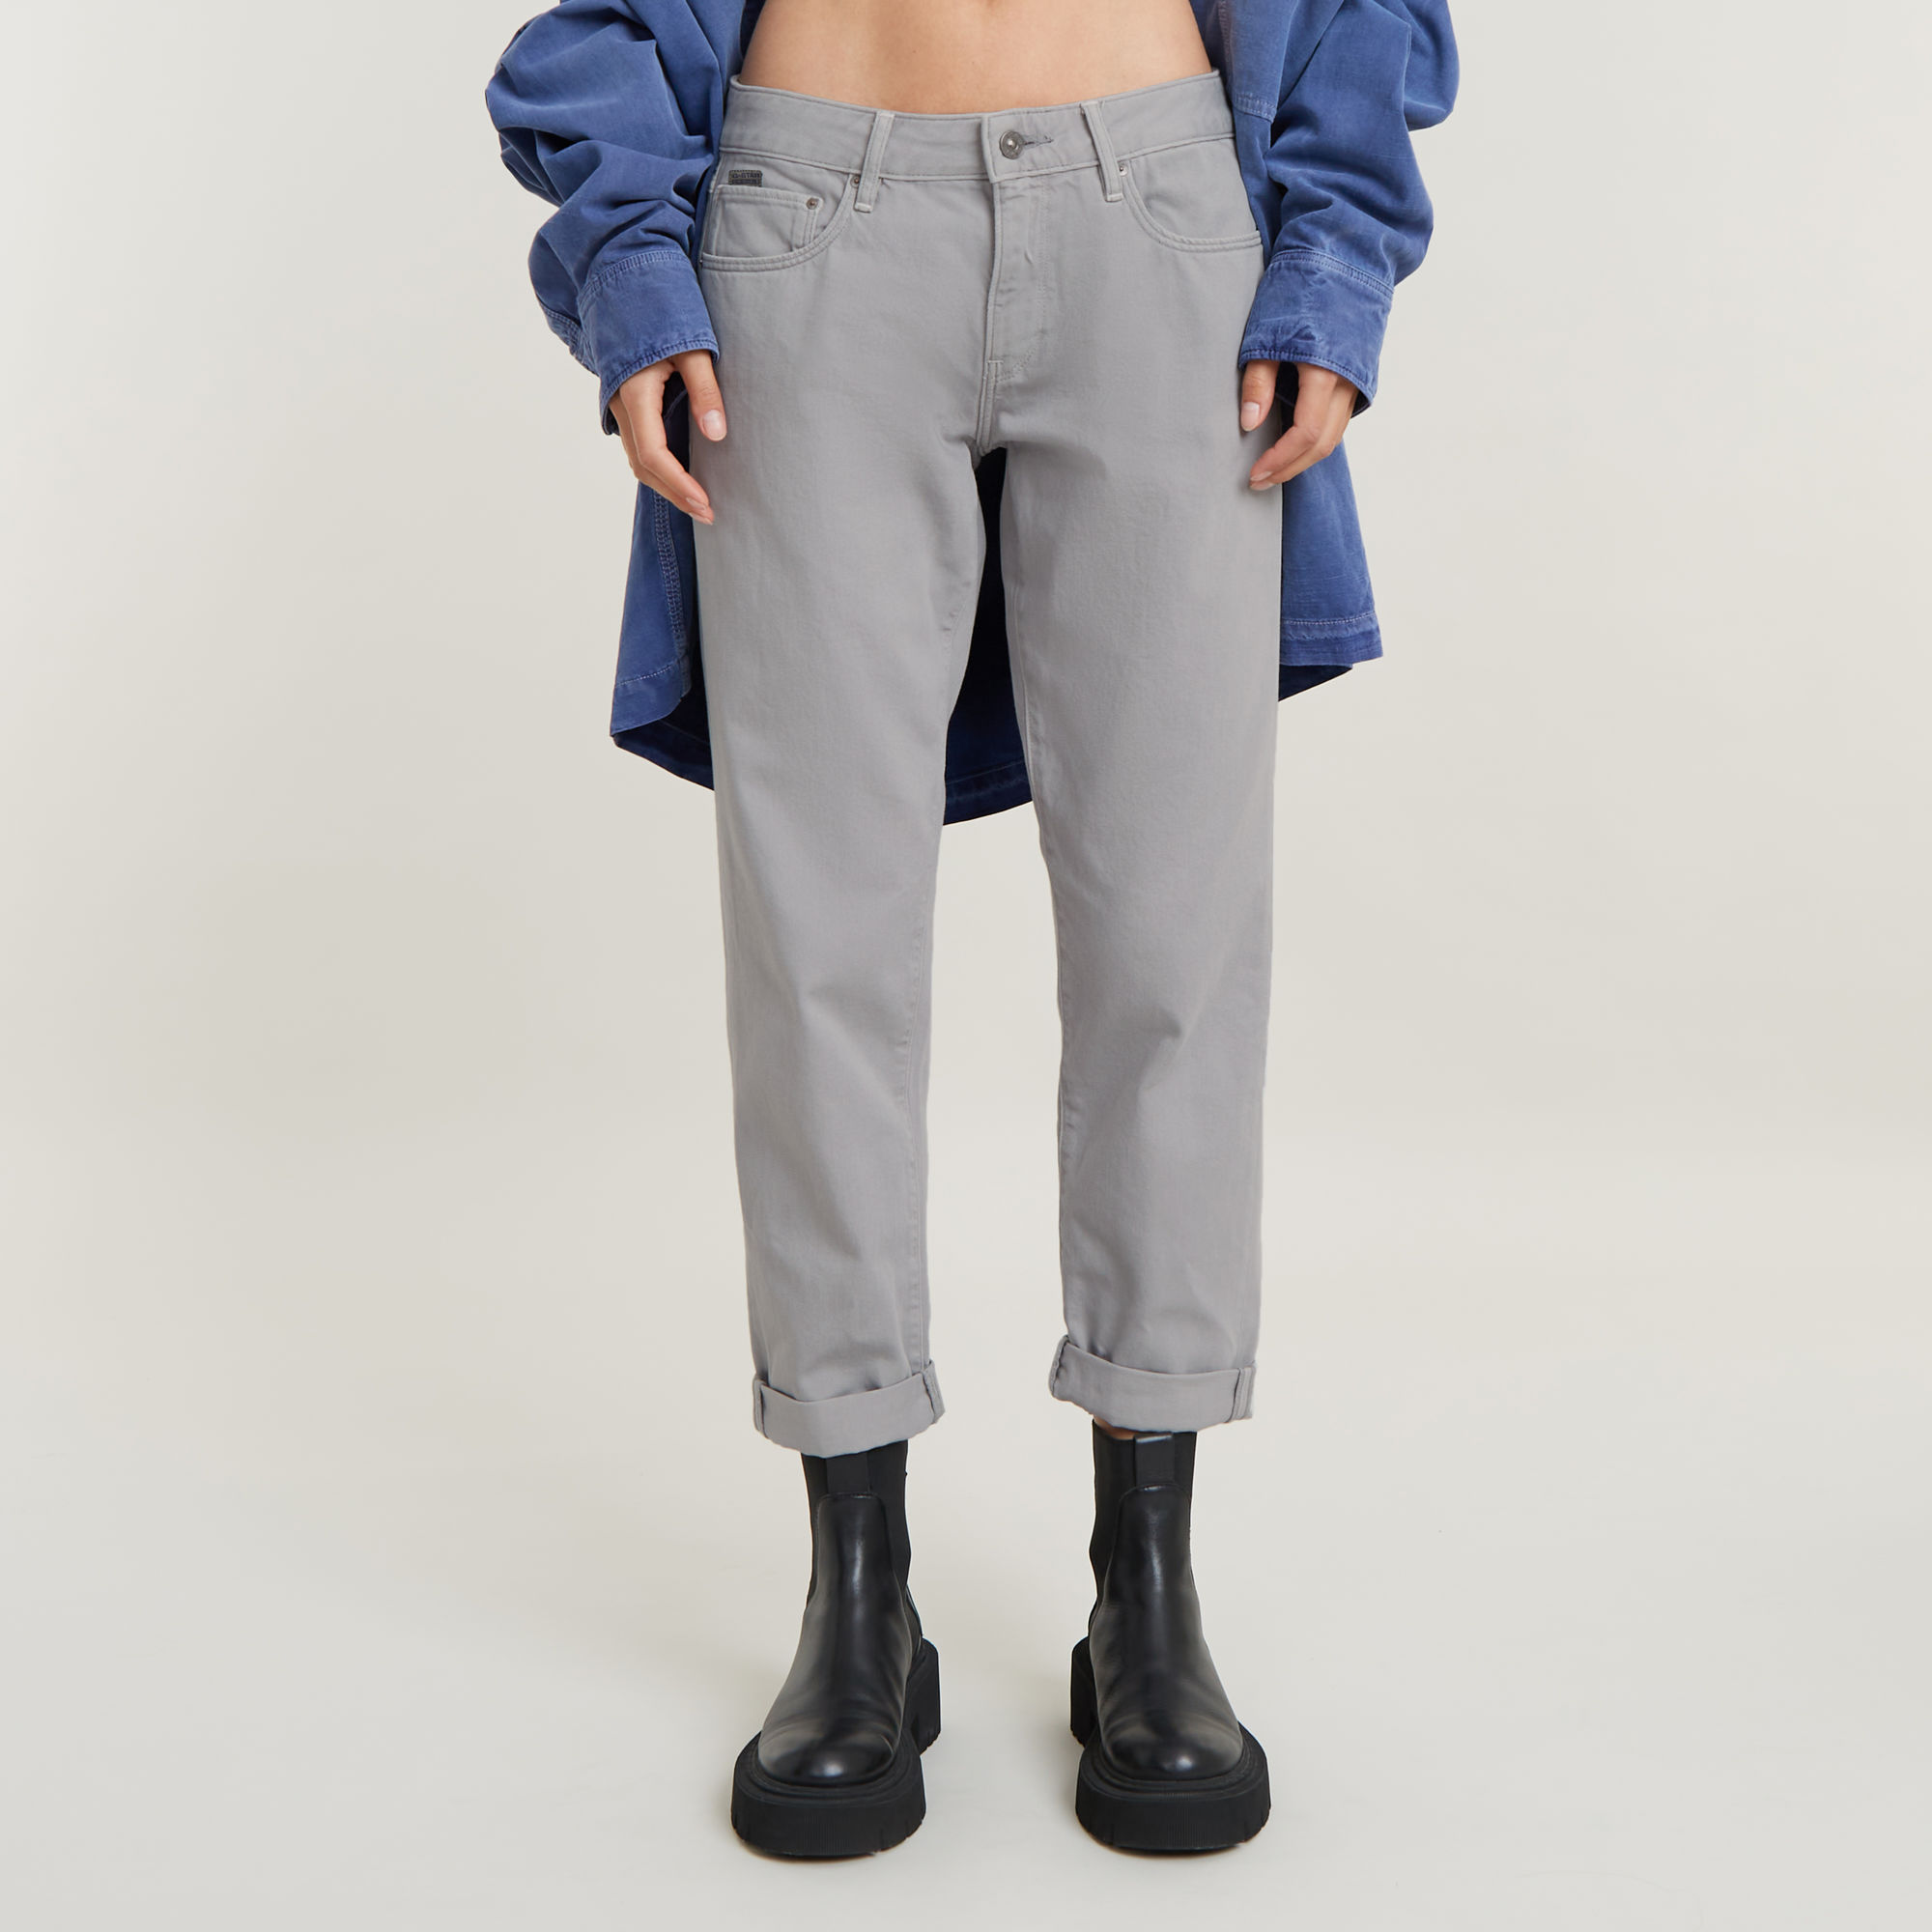 G-Star RAW Boyfriend-Jeans "Kate", Baumwollstretch Denim Qualität für hohen Tragekomfort